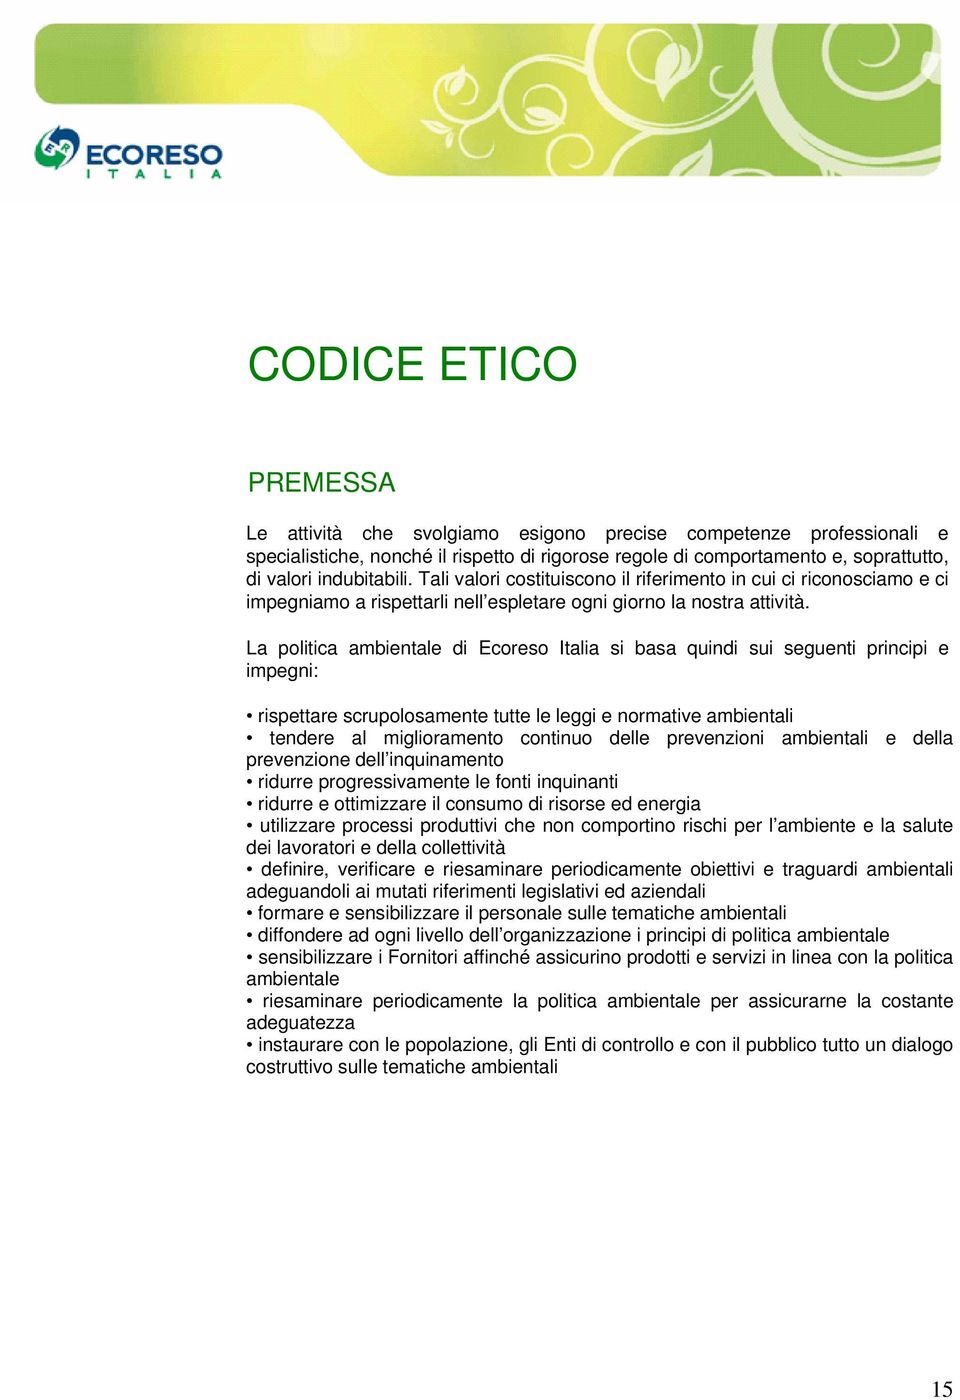 La politica ambientale di Ecoreso Italia si basa quindi sui seguenti principi e impegni: rispettare scrupolosamente tutte le leggi e normative ambientali tendere al miglioramento continuo delle